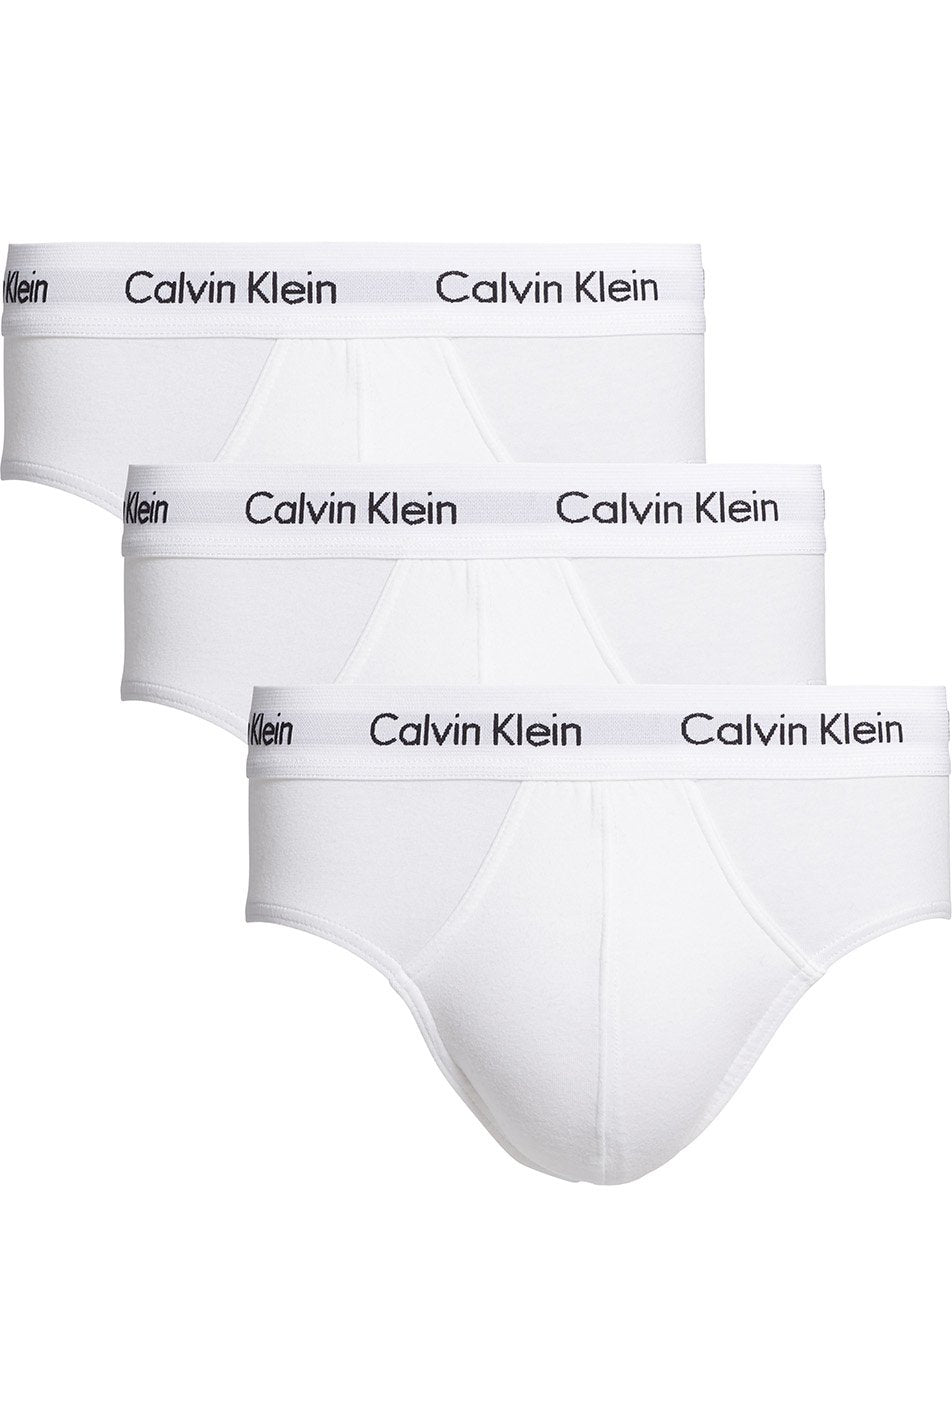 Calvin Klein 3 Pack Men's Cotton Stretch Hip Briefs